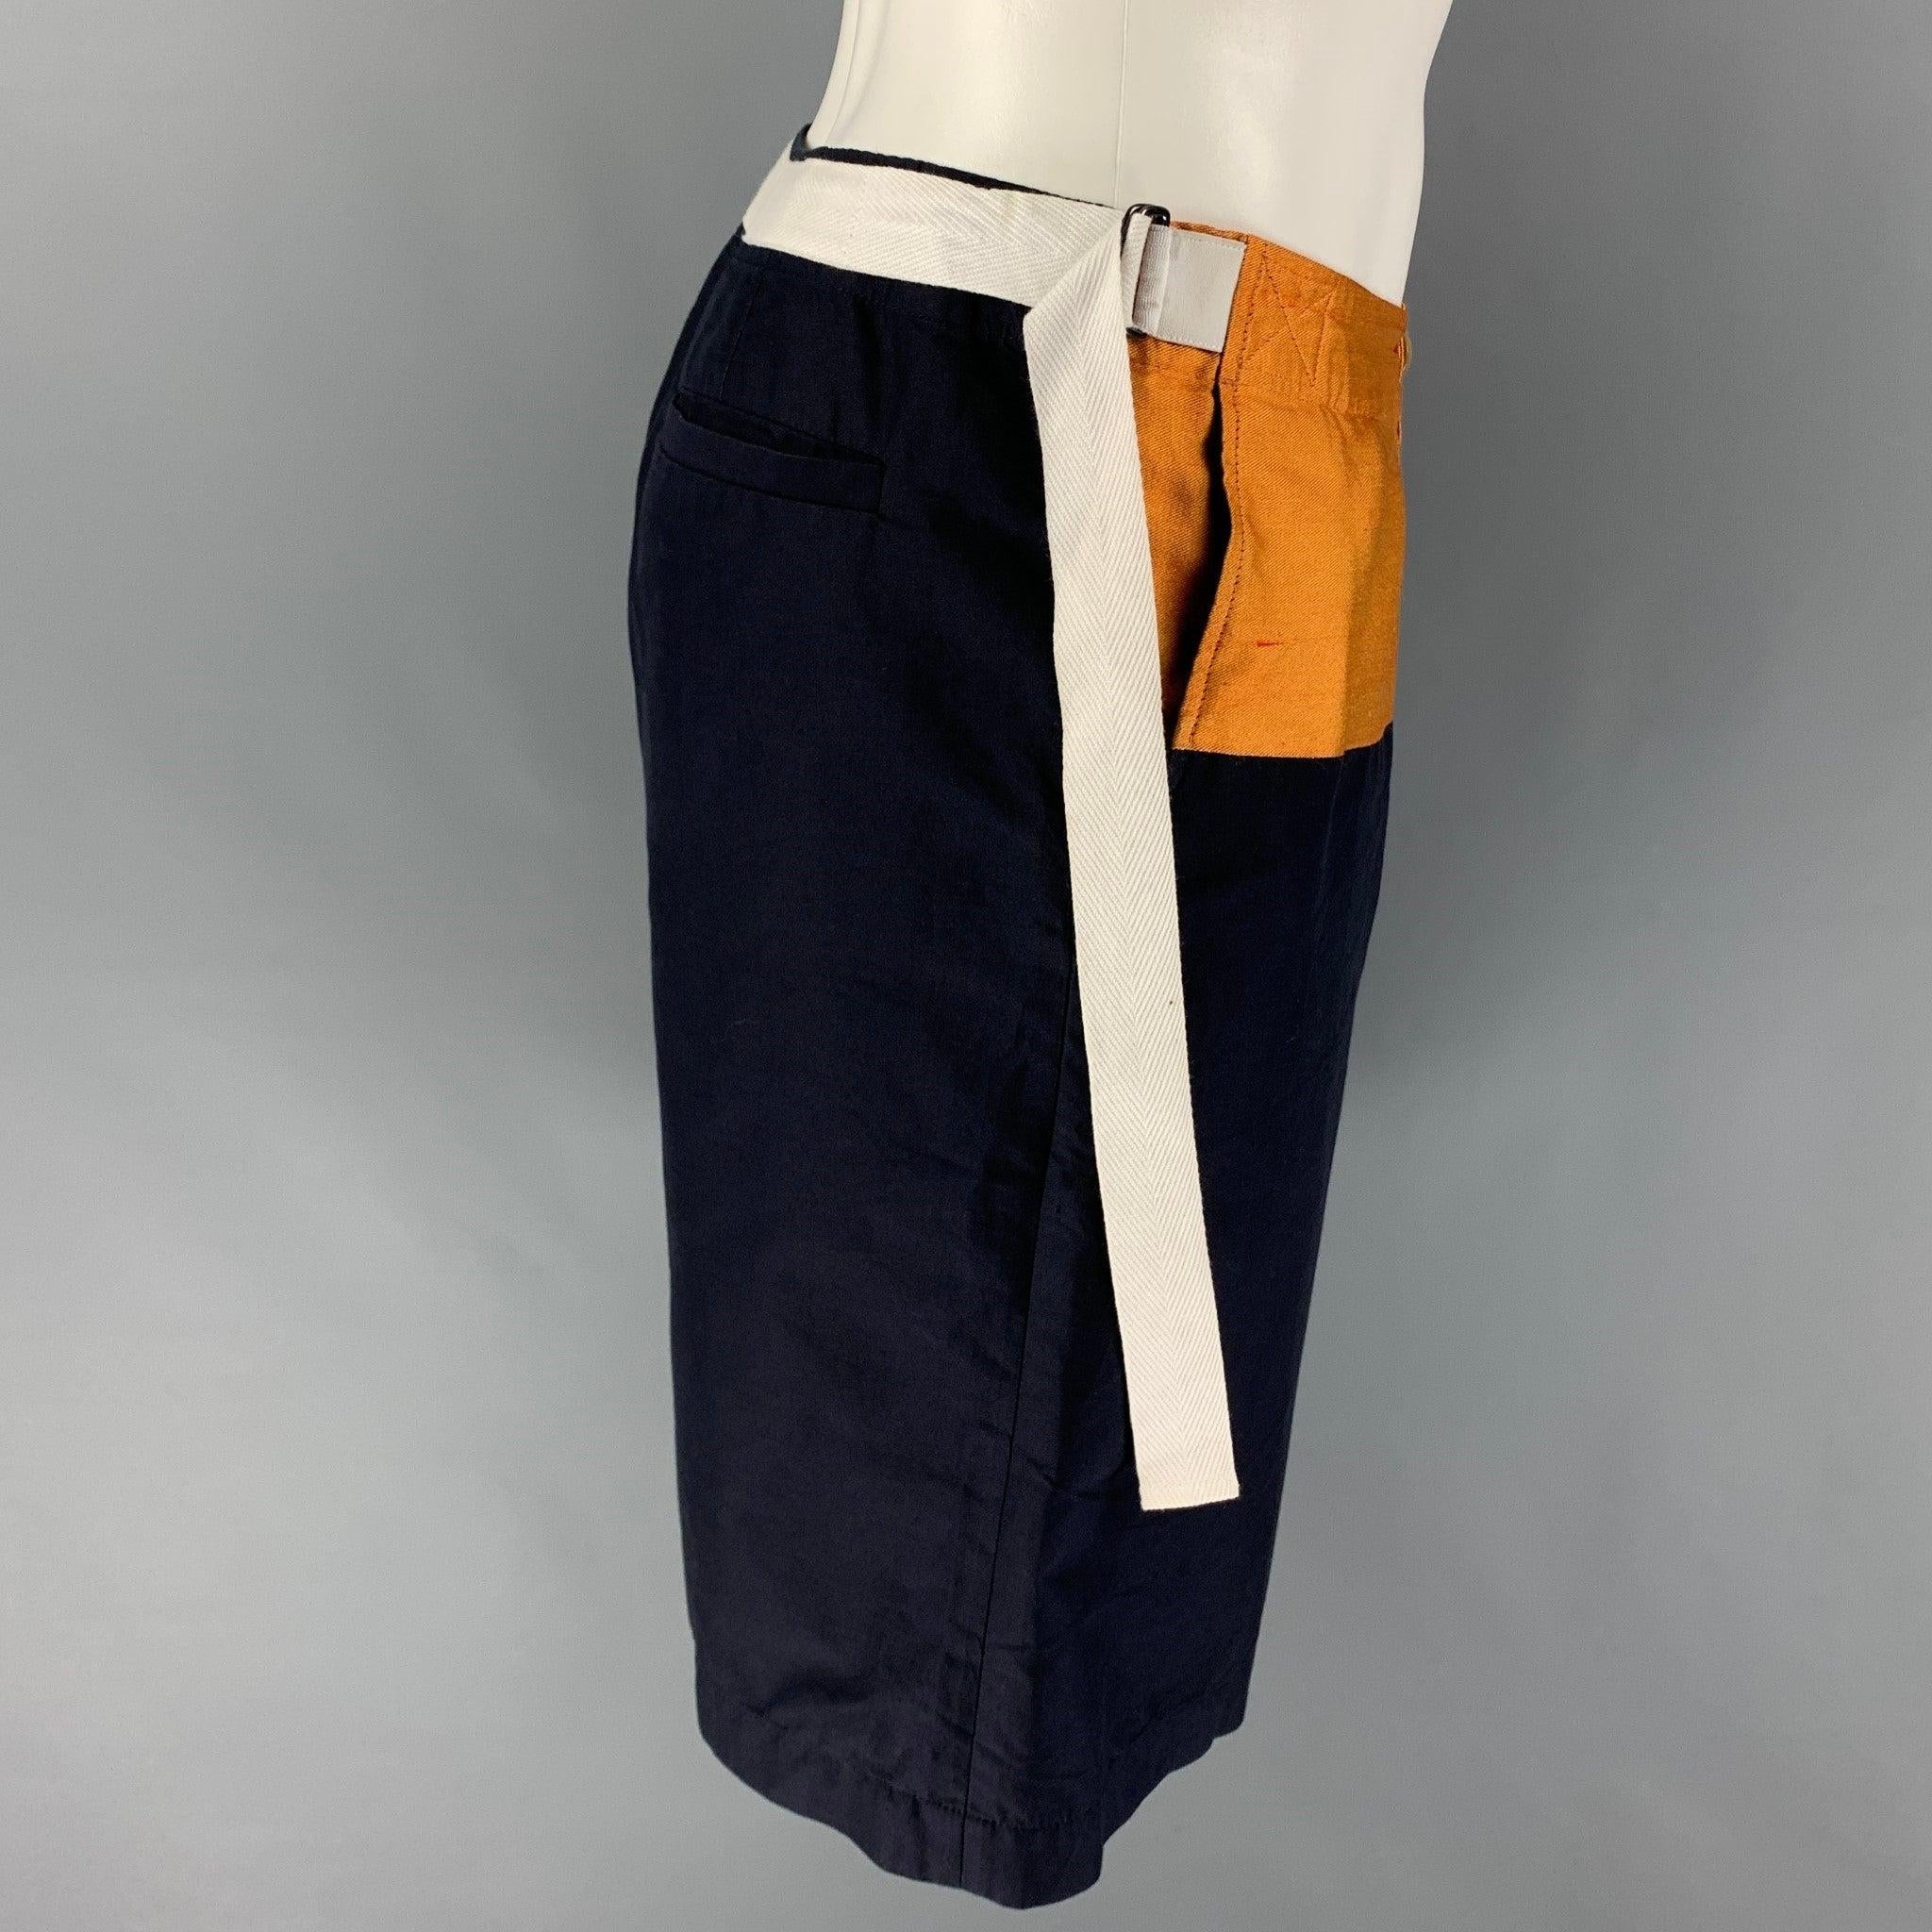 Die Shorts von DRIES VAN NOTEN sind in einem navy-goldenen Farbblock gehalten und verfügen über verstellbare seitliche Träger, einen Reißverschluss und einen geknöpften Verschluss. Hergestellt in Rumänien. Ausgezeichnet
Gebrauchtes Zustand.